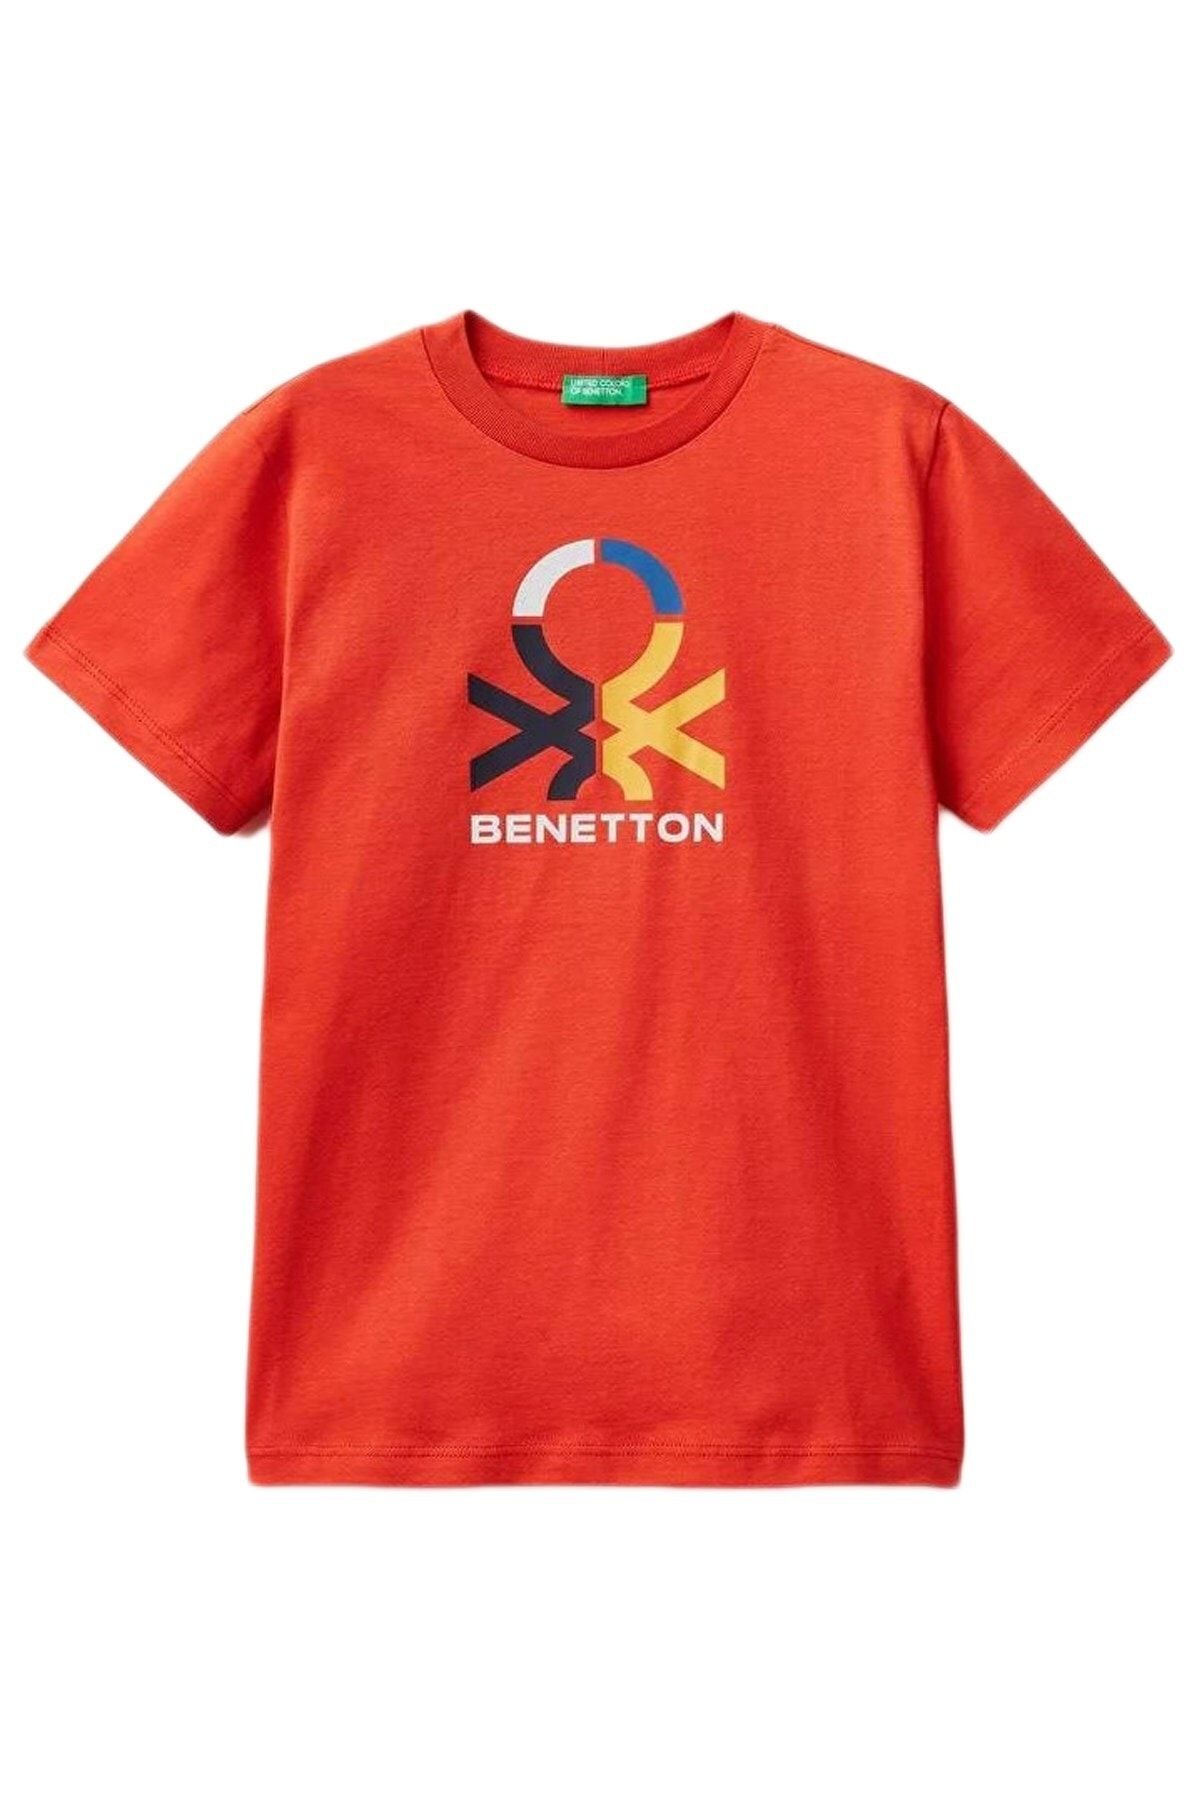 Benetton Çocuk Tişört 3ı1xc10a1